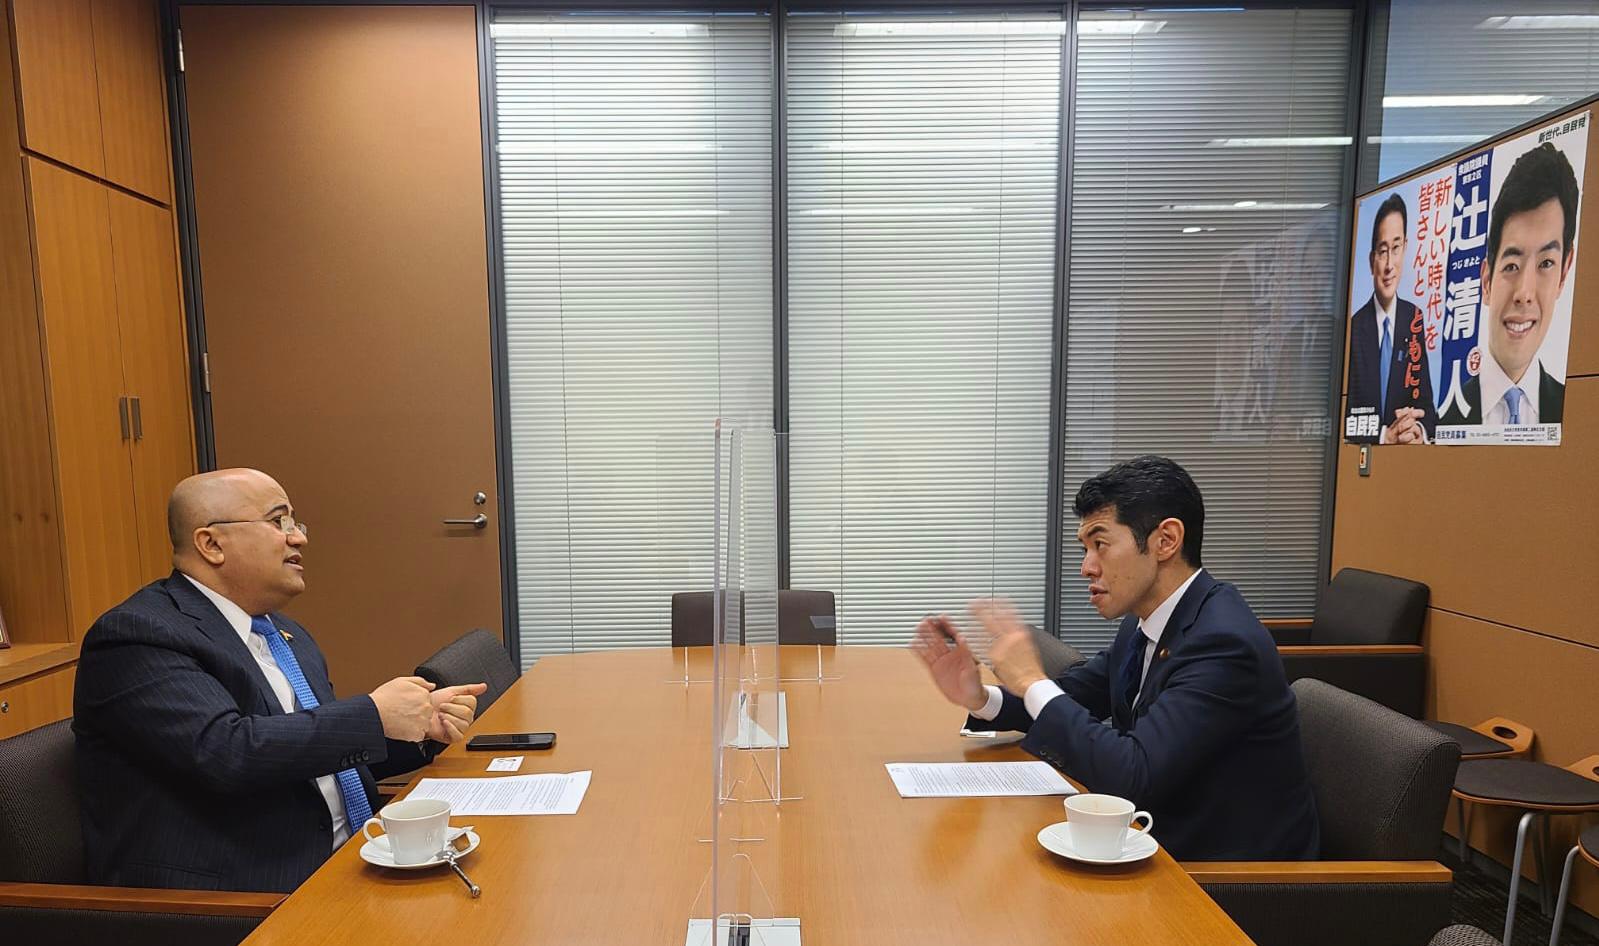 السفير عادل السنيني يجرى مباحثات في البرلمان الياباني لتعزيز العلاقات الثنائية ورفع أوجه الدعم لبلادنا